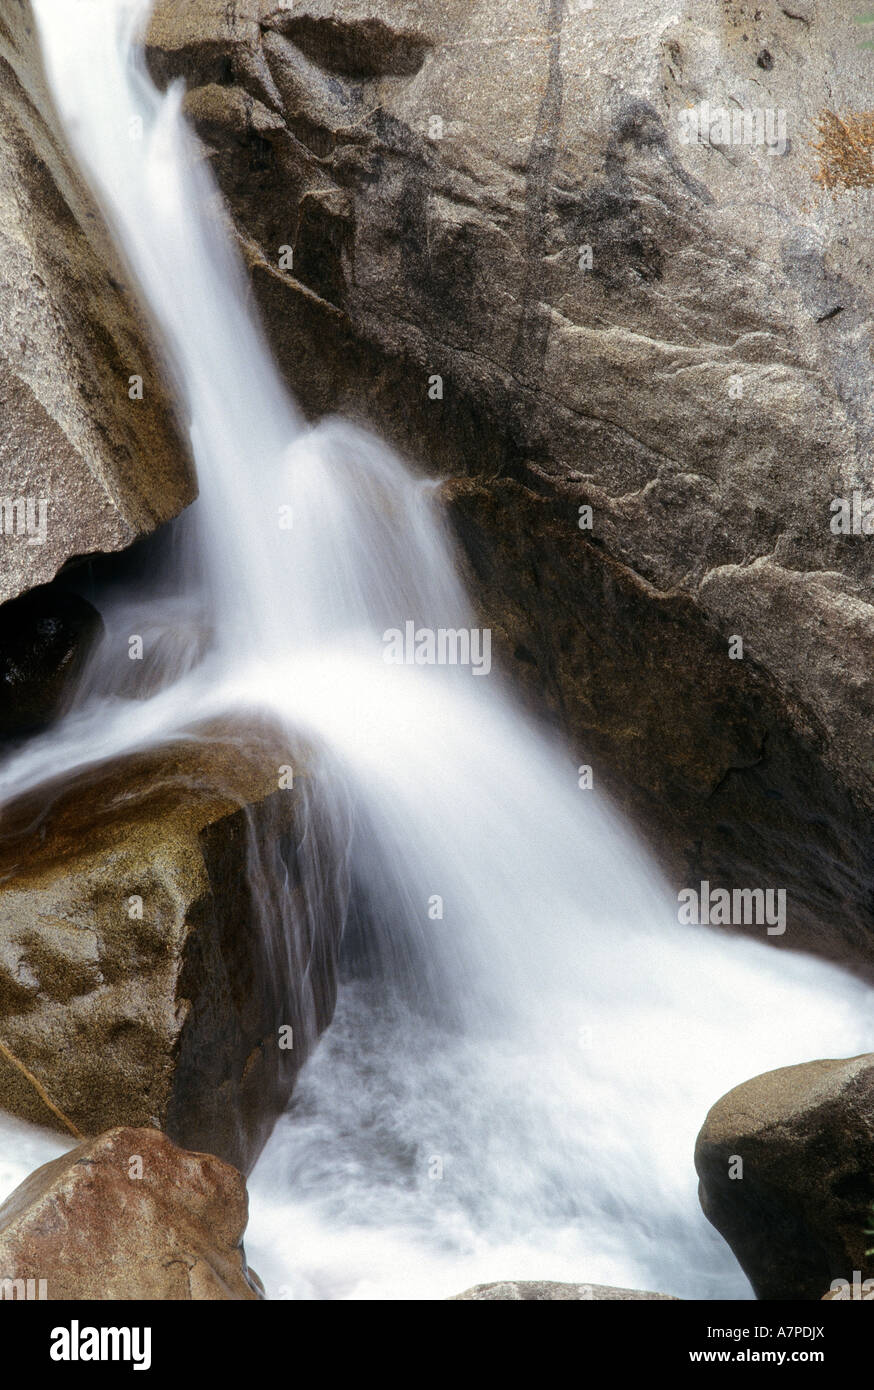 Petite cascade sur les rochers de granit, vallée de Yosemite, Yosemite National Park, California, USA Banque D'Images